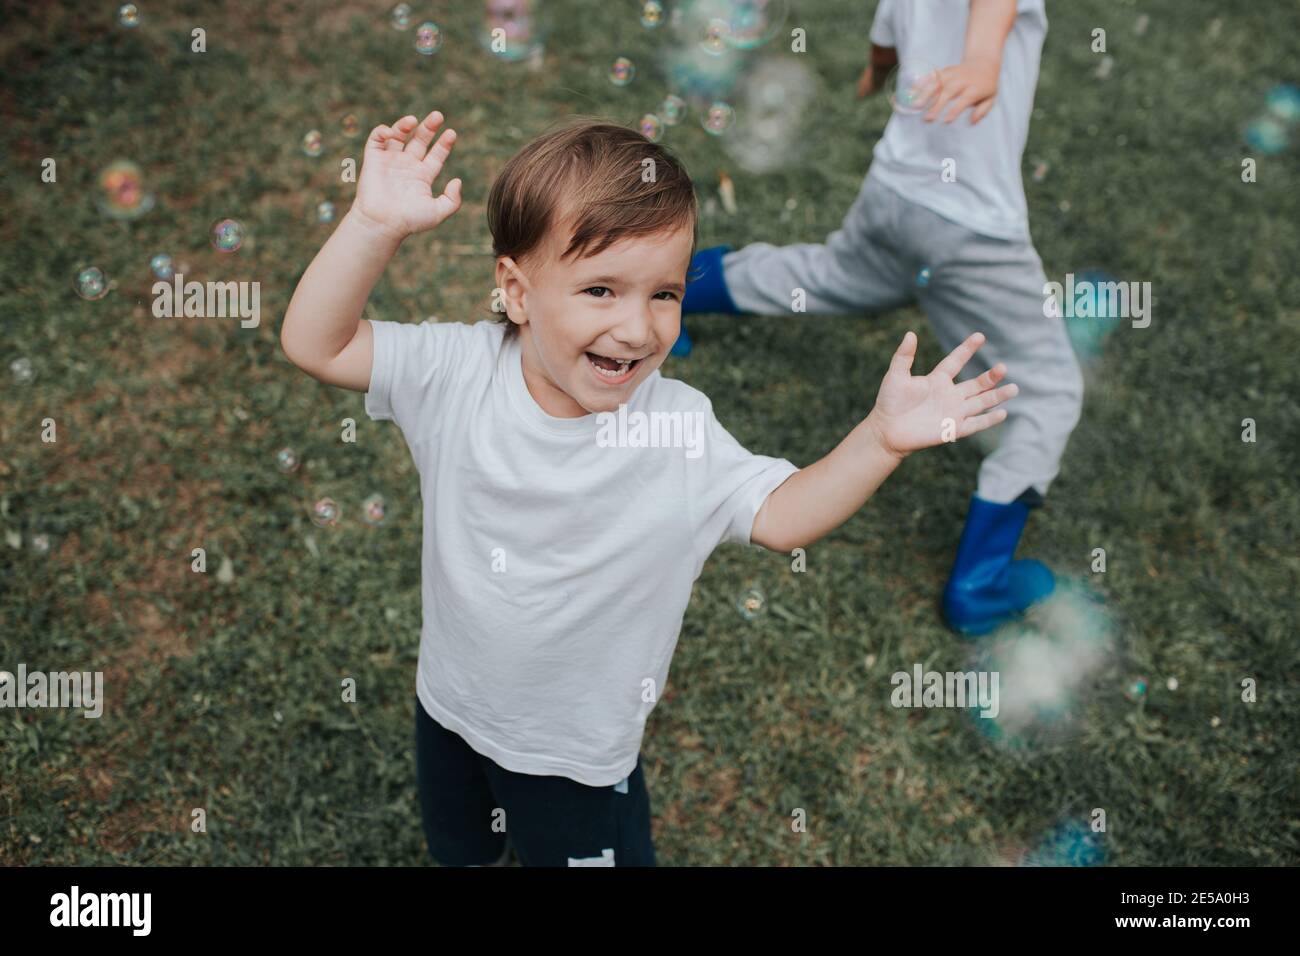 Garçon joyeux qui court après des bulles de savon. Un enfant heureux pourchassant des bulles de savon dehors dans un jardin, un jour d'été. Banque D'Images